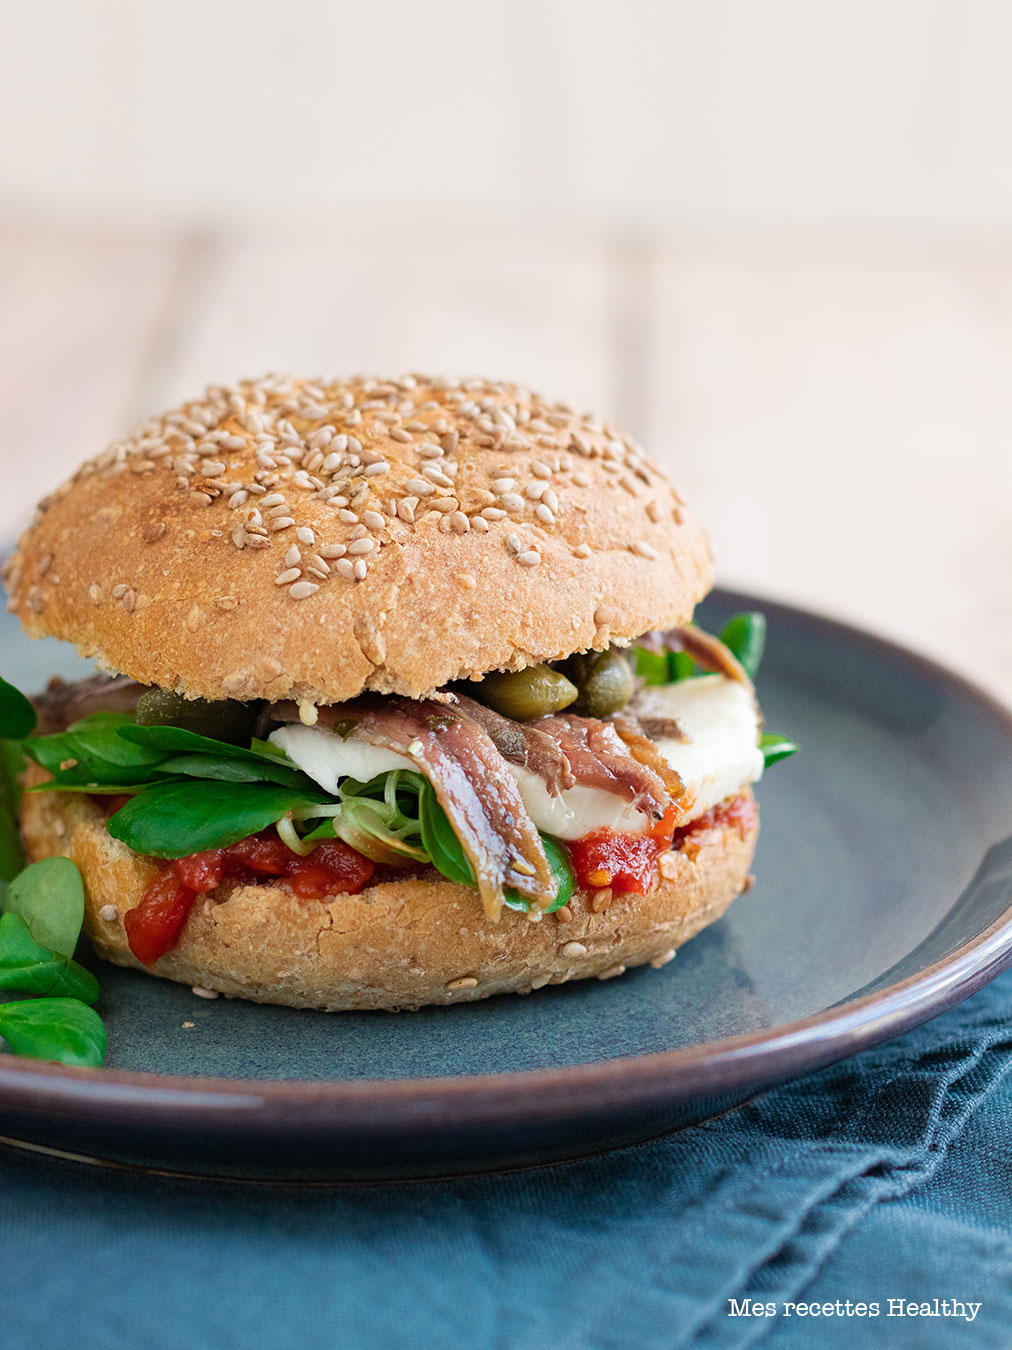 recette healthy-anchois-capre-burger-tomate-sandwich